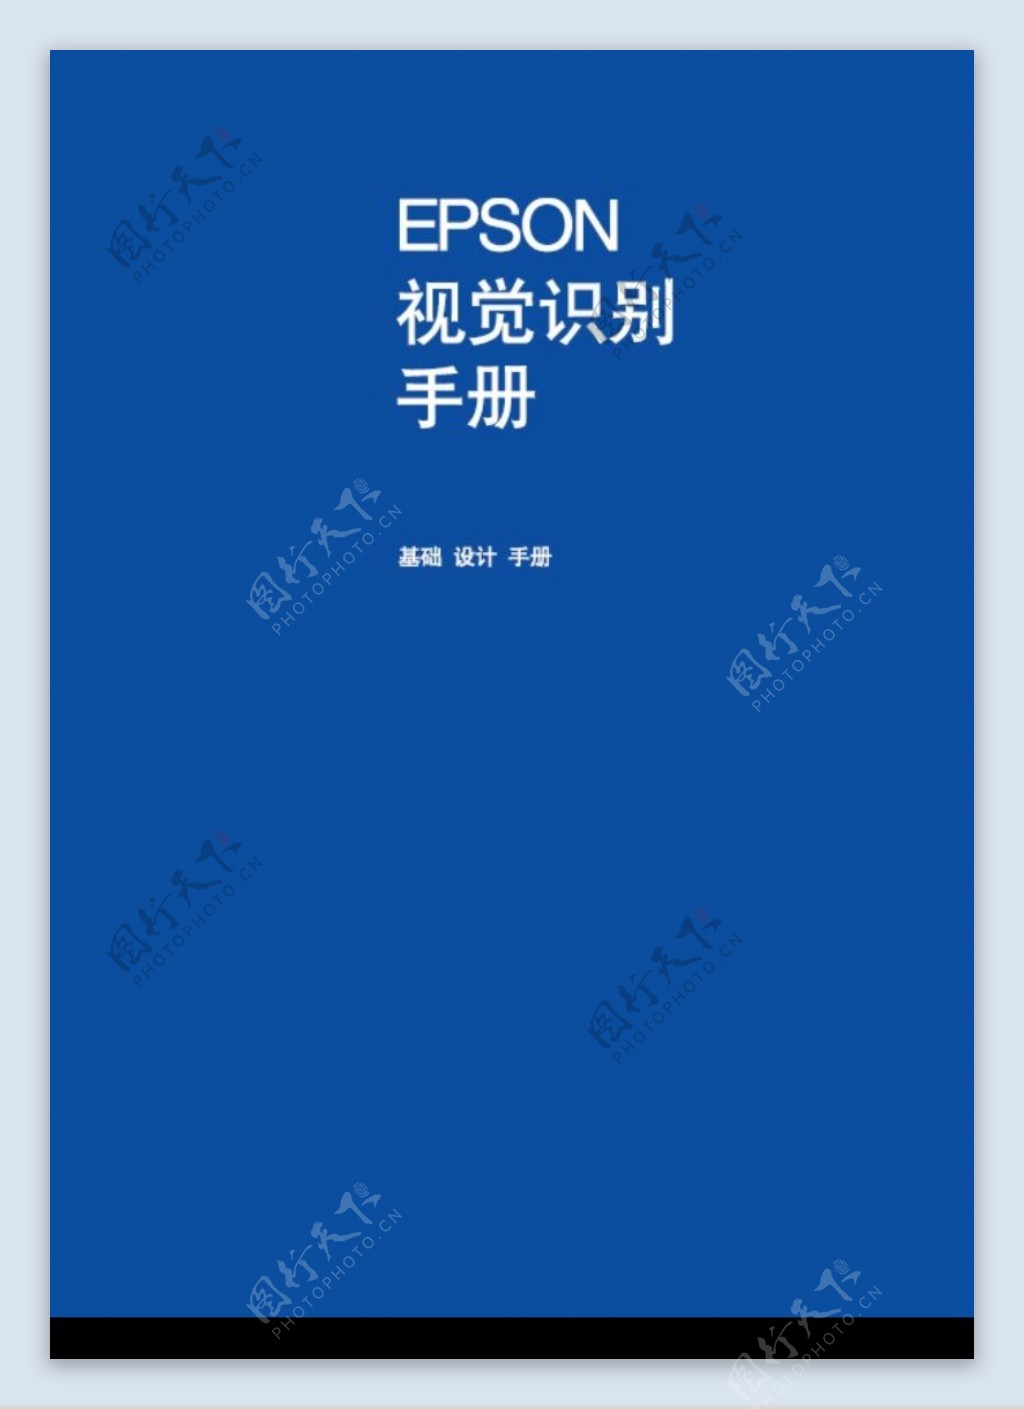 EPSON0001